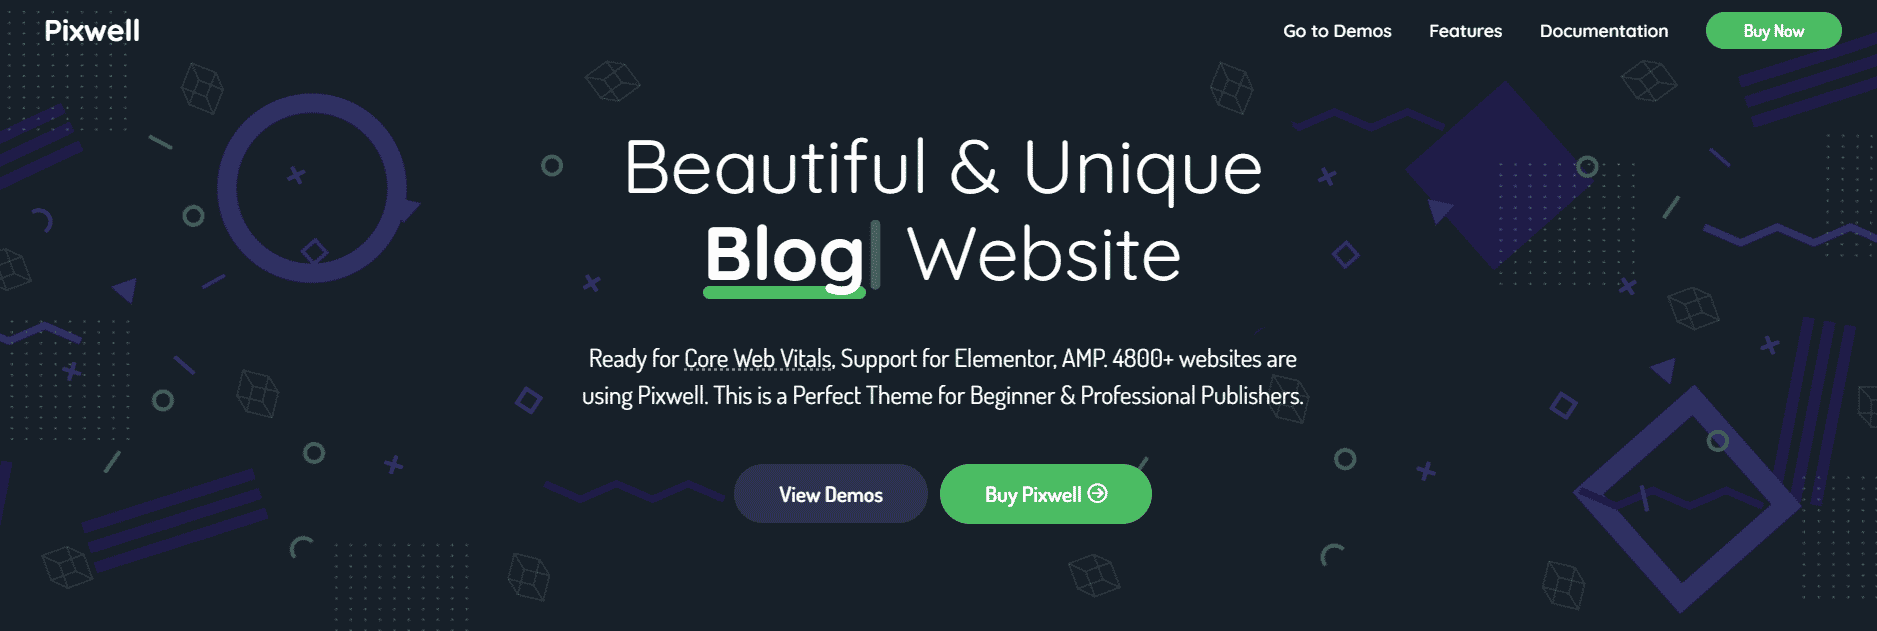 Schermata del sito web di Pixwell, uno dei migliori temi WordPress per affiliati.